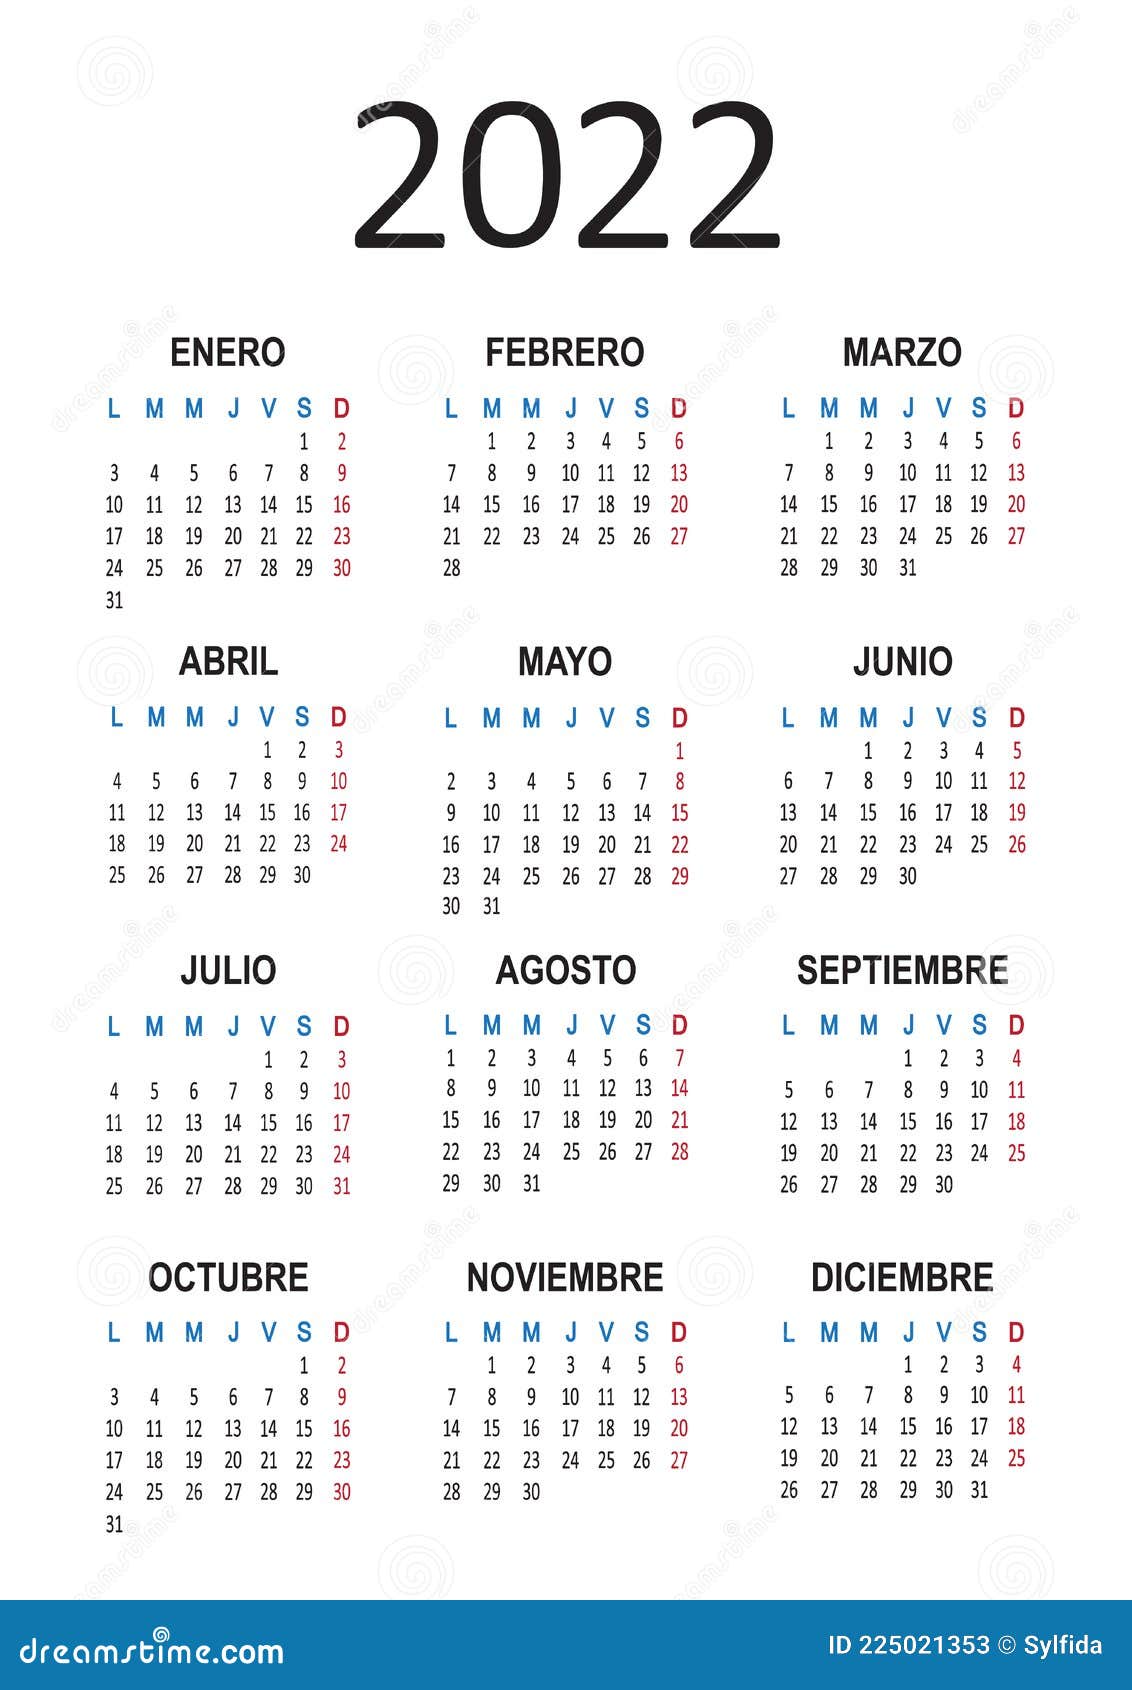 calendar-in-spanish-2022-january-calendar-2022